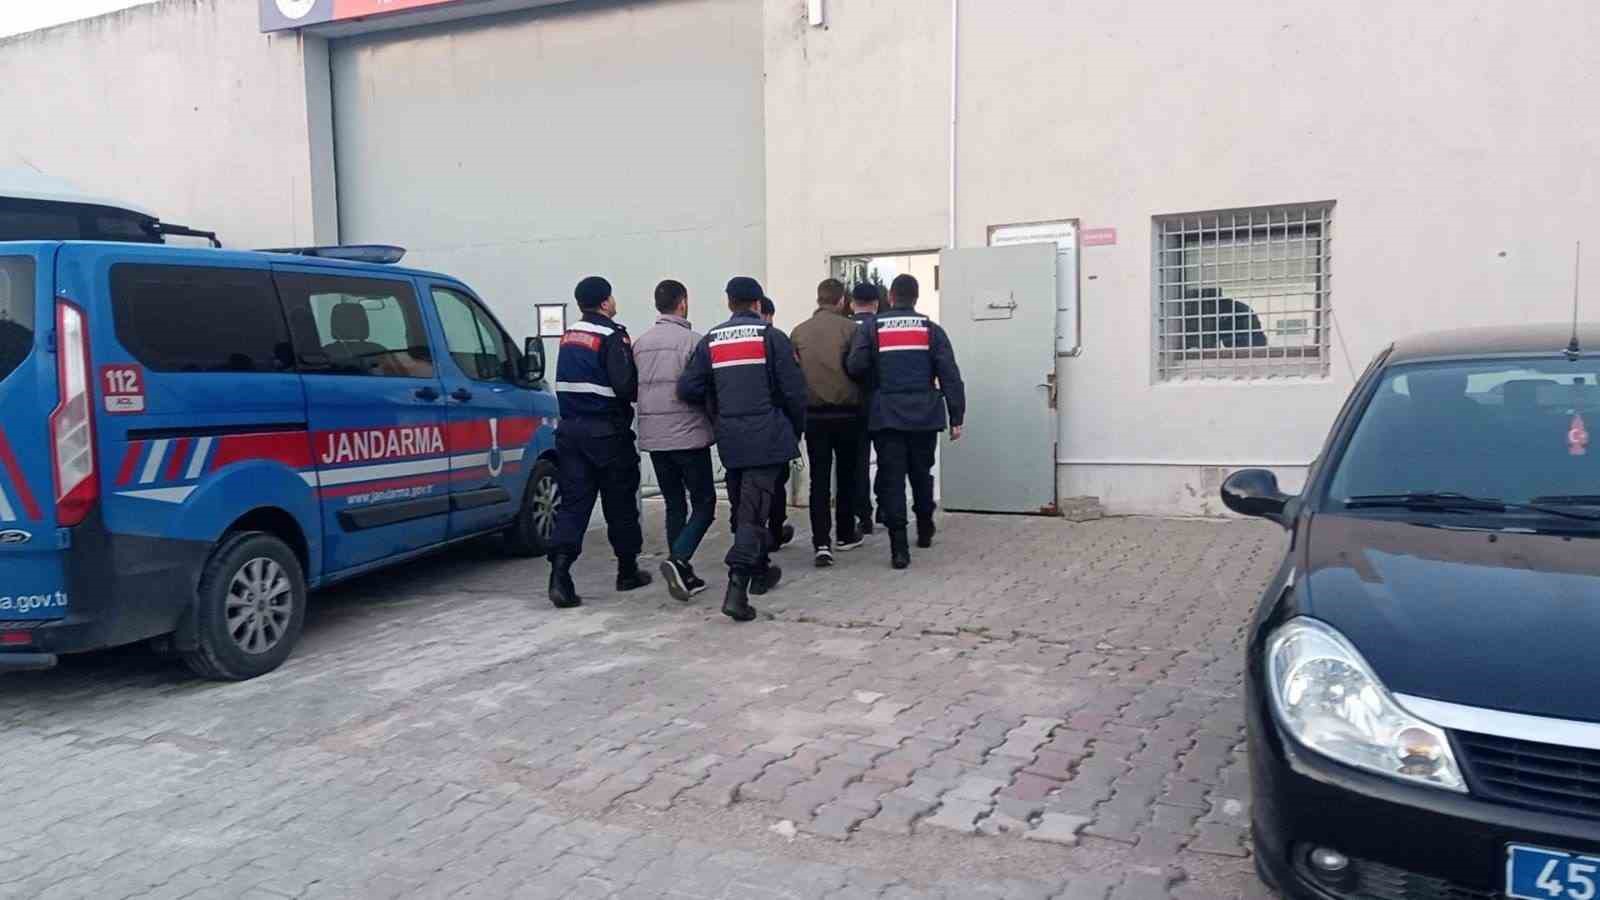 Manisa’da jandarmadan PKK terör örgütüne operasyon: 2 kişi tutuklandı
